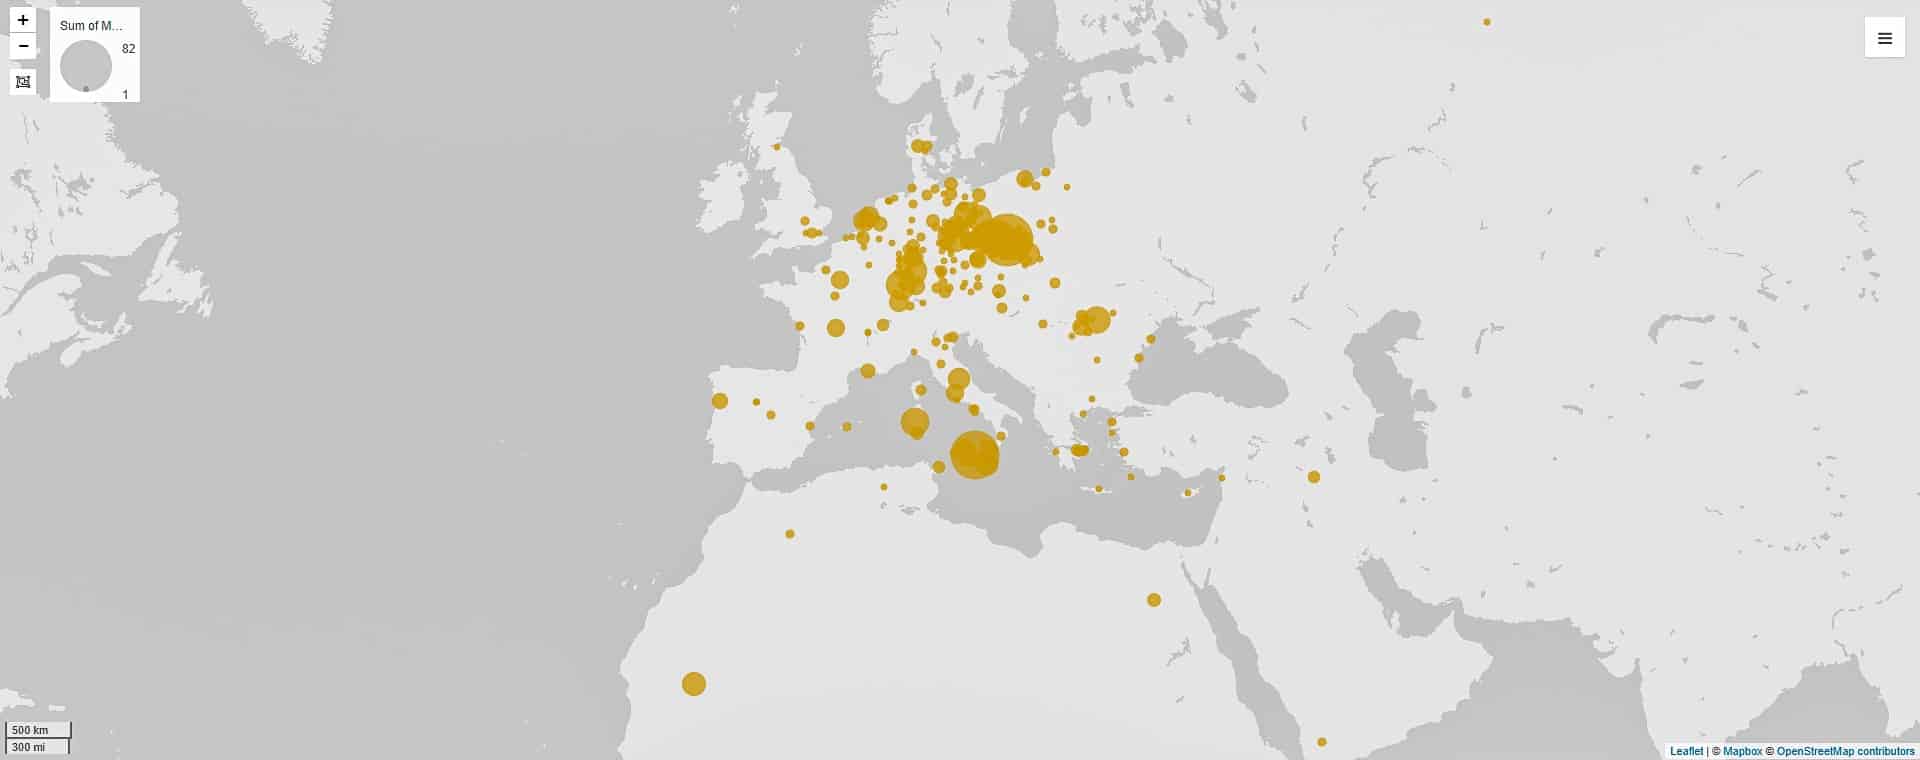 Ansicht einer Landkarte, die primär Europa aber auch Teile Asiens und Nordafrikas zeigt. Gelbe Kreise markieren bestimmte Orte.